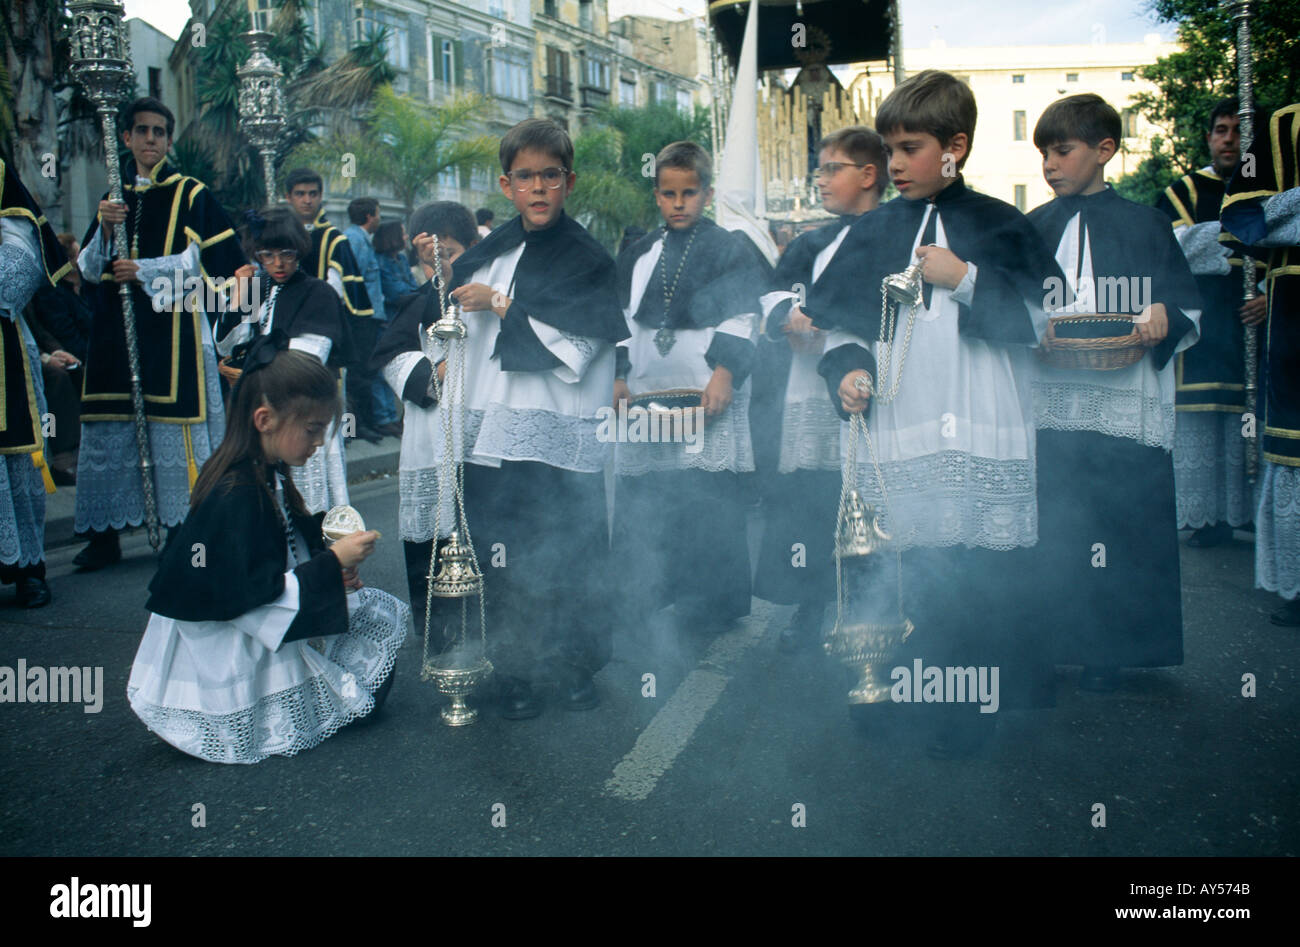 Semana Santa, Pâques ou des célébrations de la semaine sainte, de processions religieuses, malaga andalousie andalousie espagne Banque D'Images